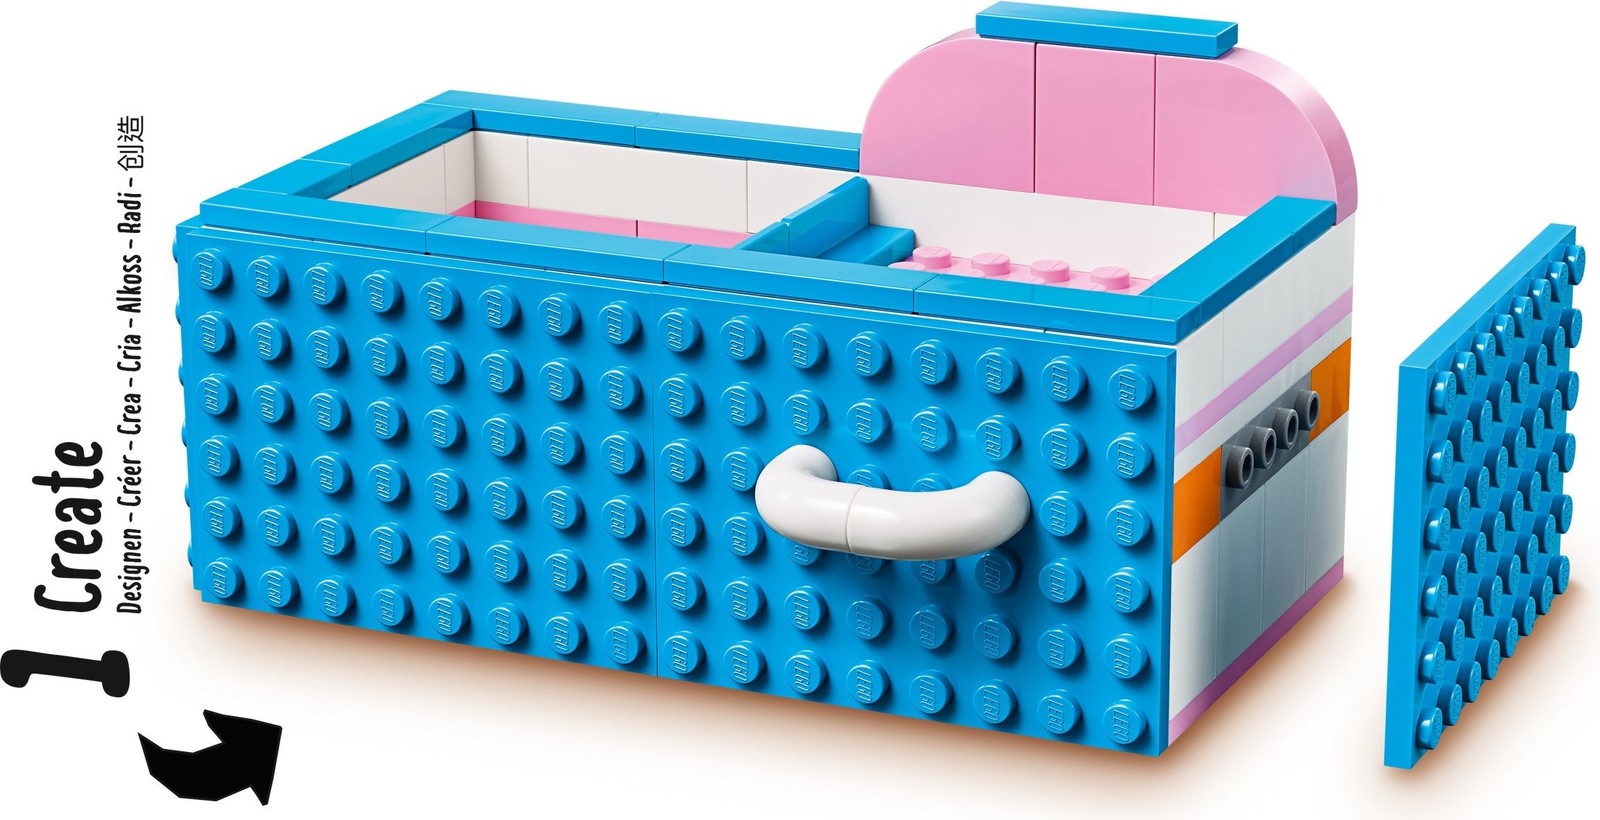 LEGO DOTS: Desk Organizer - (41907)